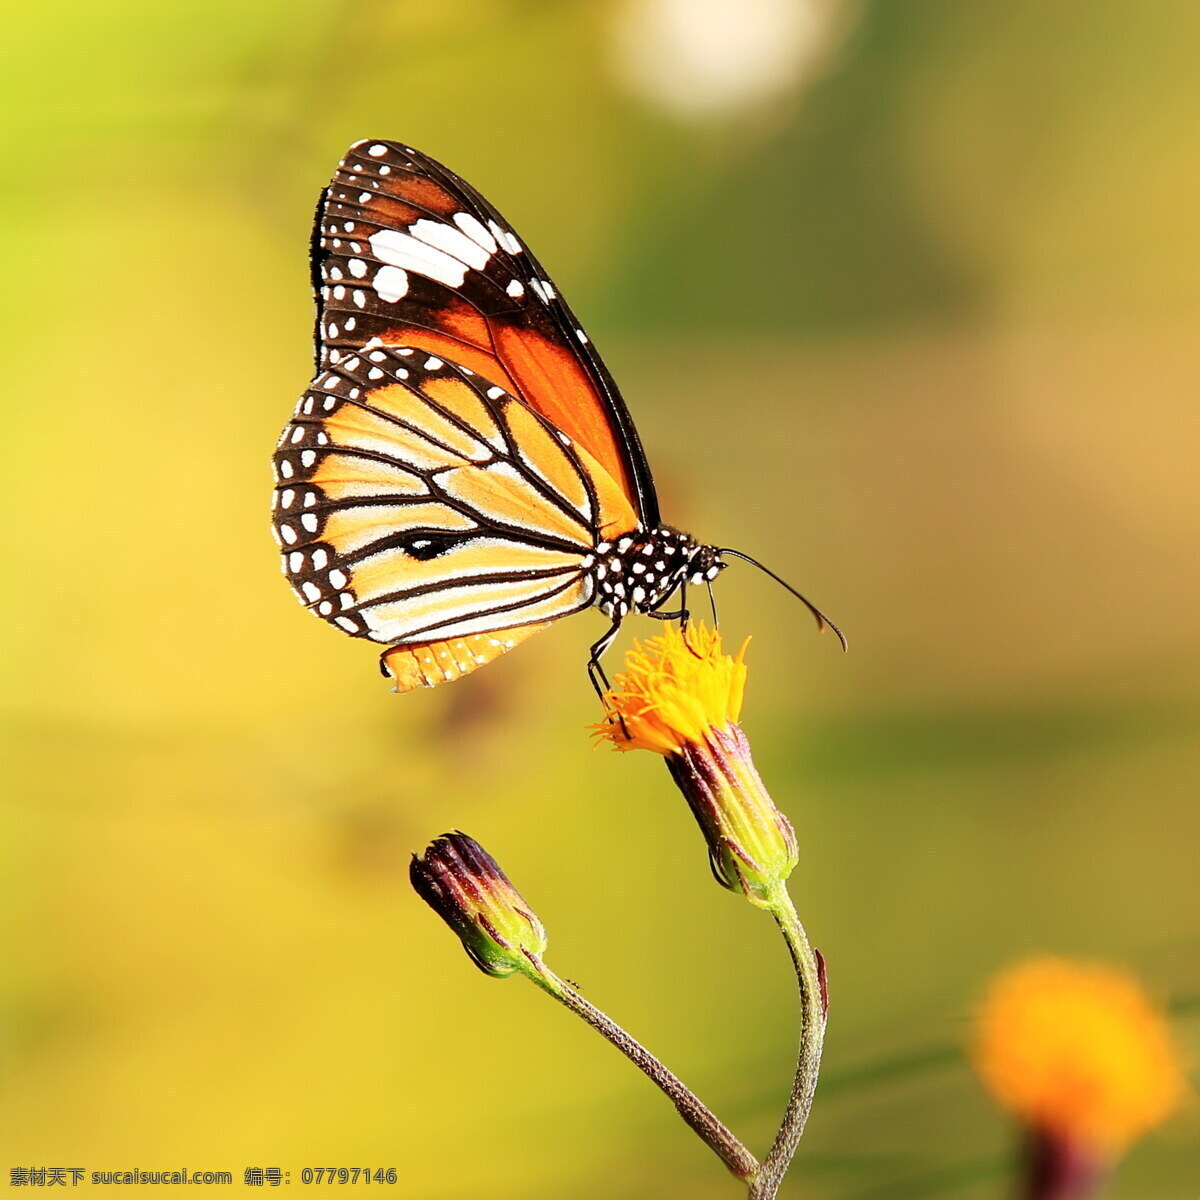 采 花蜜 蝴蝶 彩色蝴蝶 美丽蝴蝶 昆虫 动物 野生动物 生物世界 动物摄影 昆虫世界